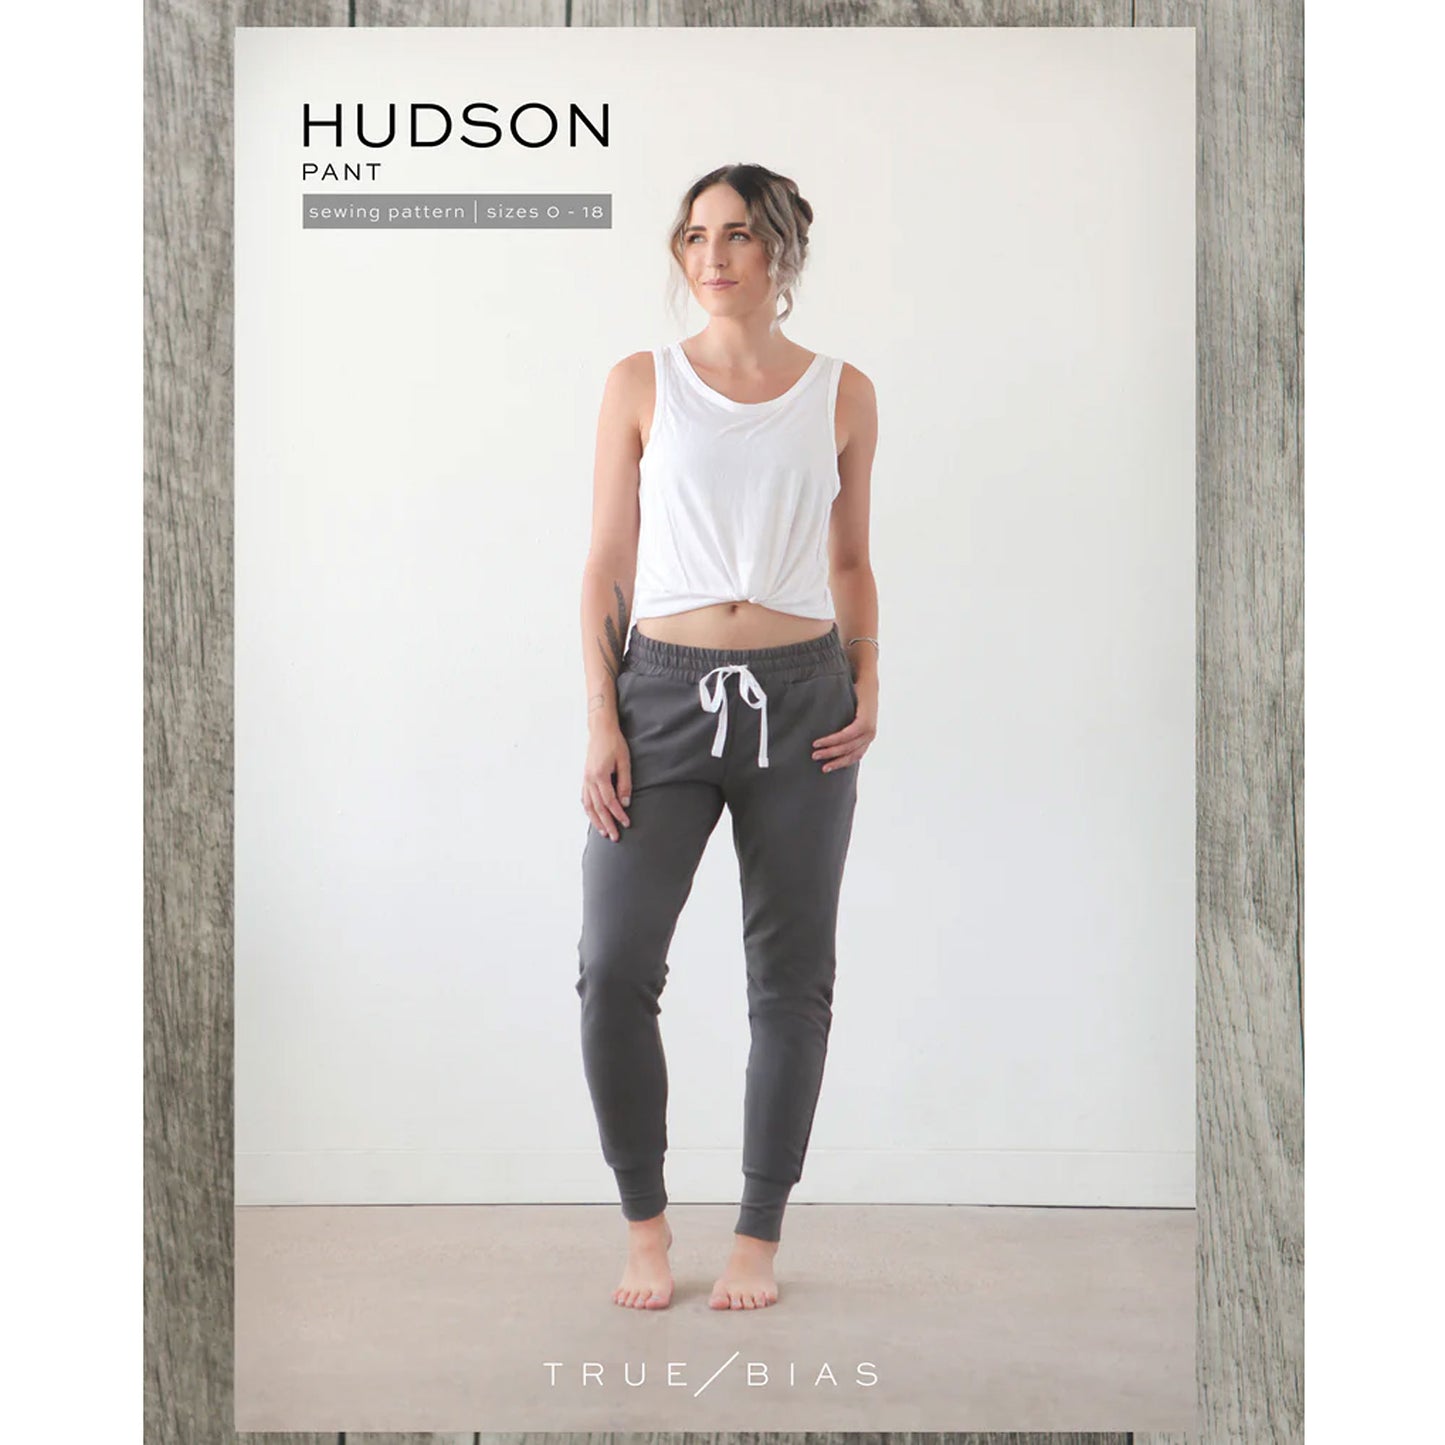 Hudson Pant Sewing Pattern - True Bias